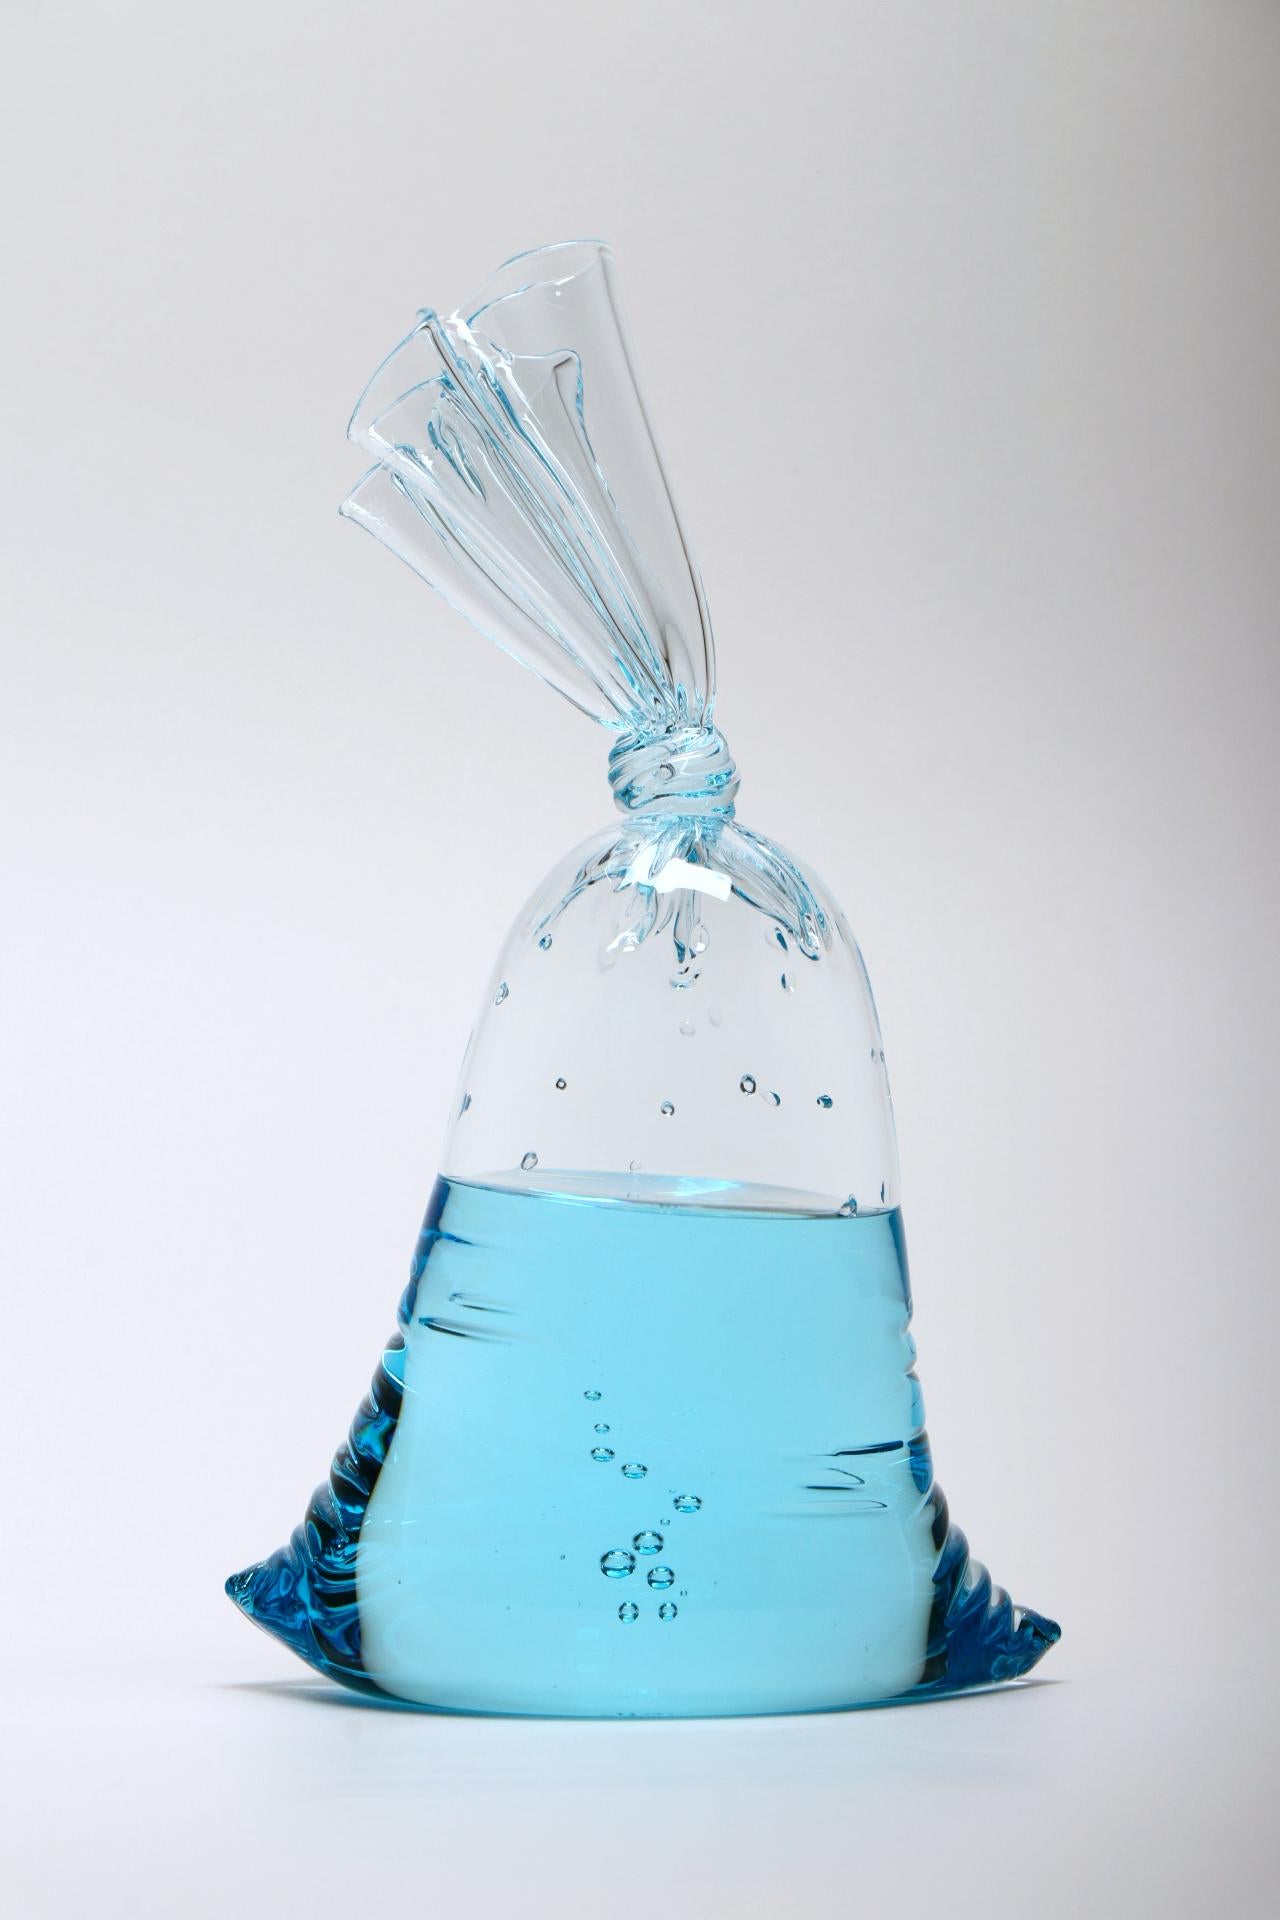 NEUE VERÖFFENTLICHUNG! Blue Series - Hyperreale kleine blaue Wassersack-Glasskulptur, Voll- und Hohlglas von Dylan Martinez. 

Größe: 10,25 x 6 x 3,75 Zoll

Die hyperrealen Skulpturen von Dylan Martinez bestehen aus heißgeformtem Glas, das der